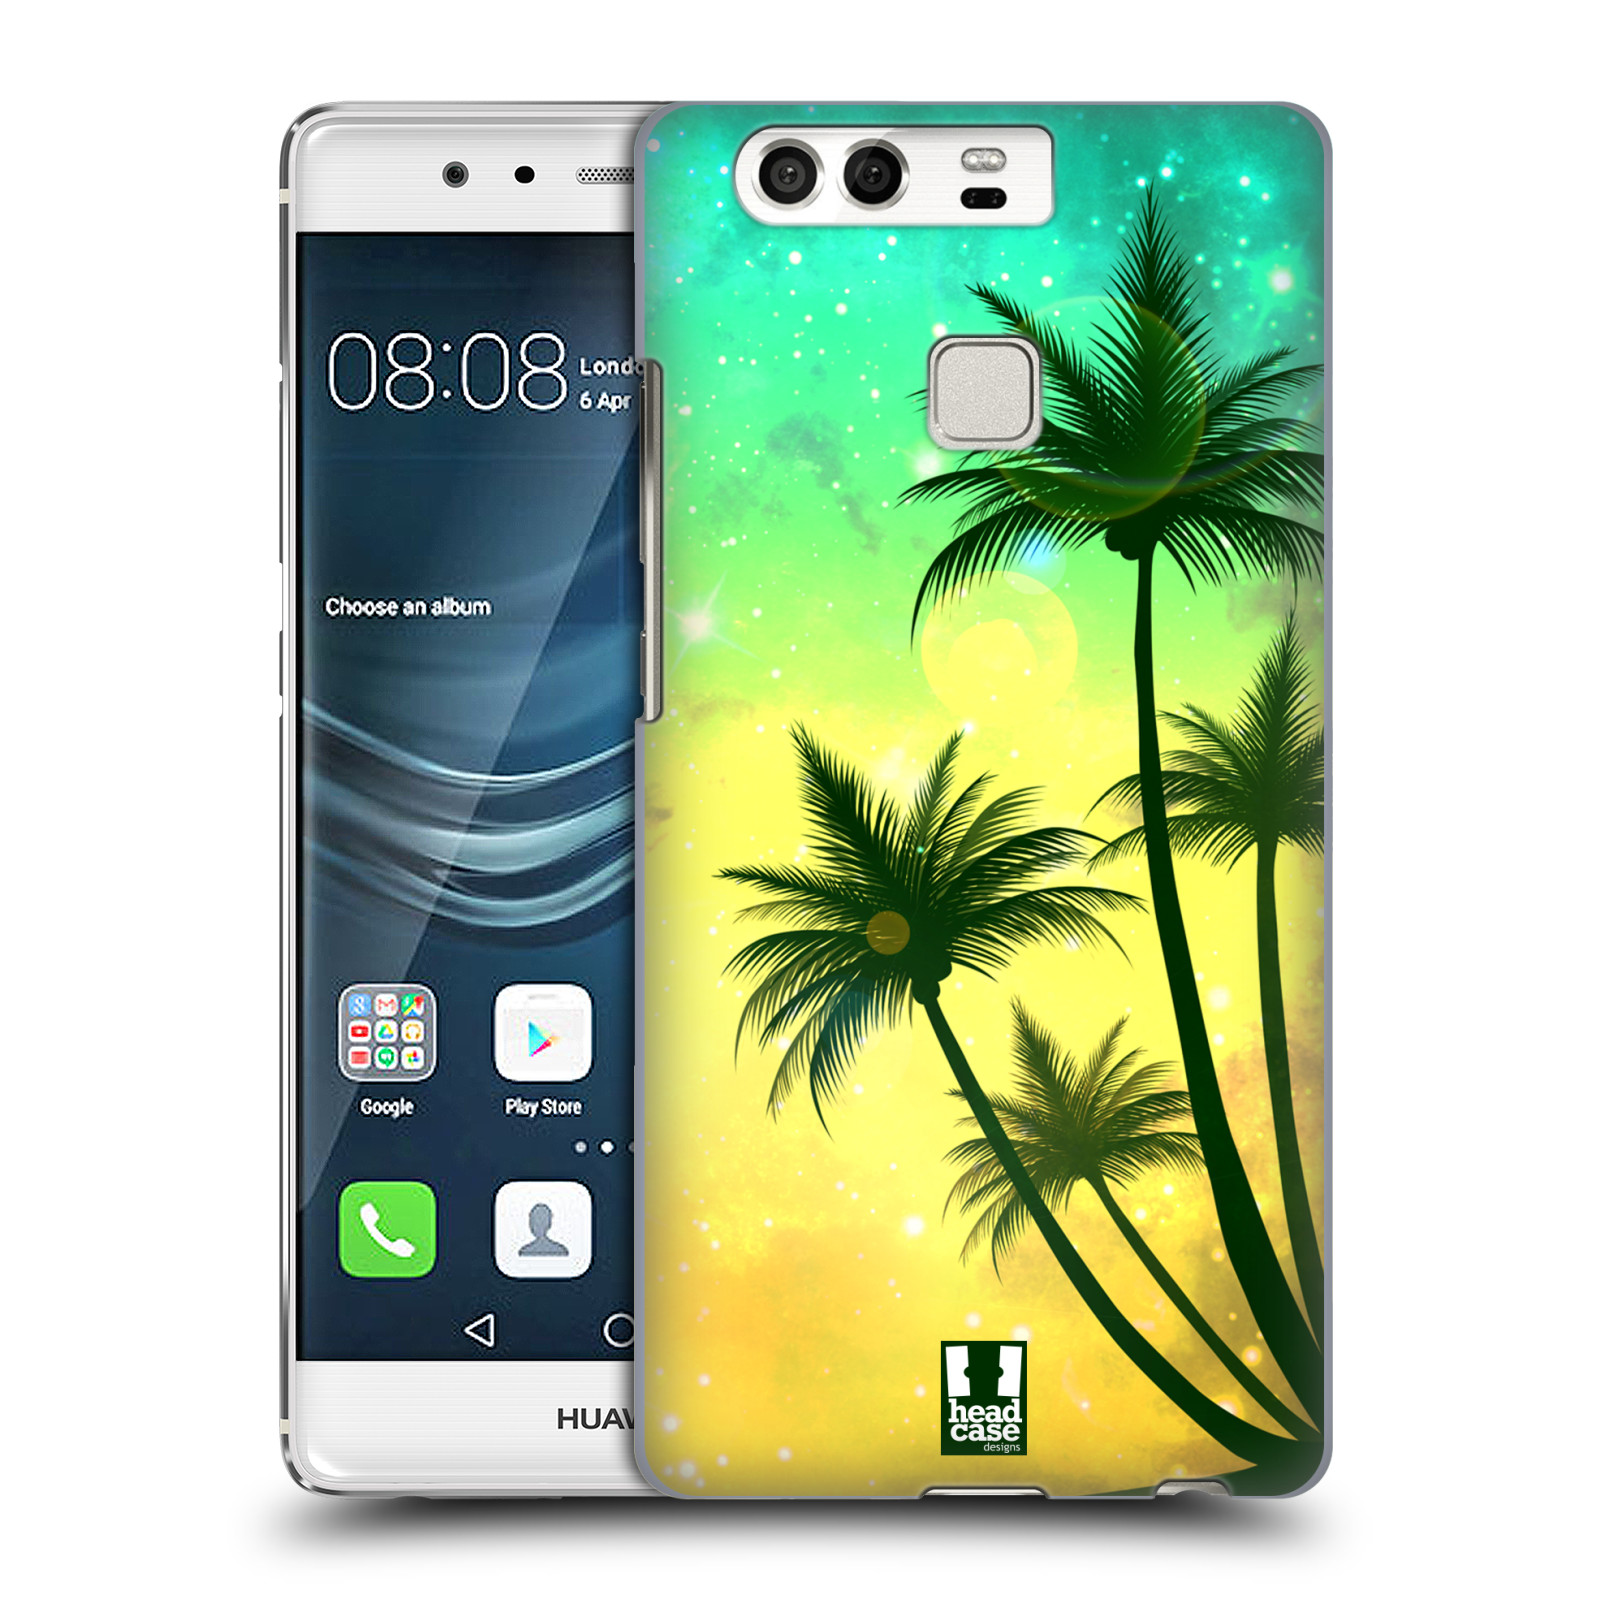 HEAD CASE plastový obal na mobil Huawei P9 / P9 DUAL SIM vzor Kreslený motiv silueta moře a palmy TYRKYSOVÁ